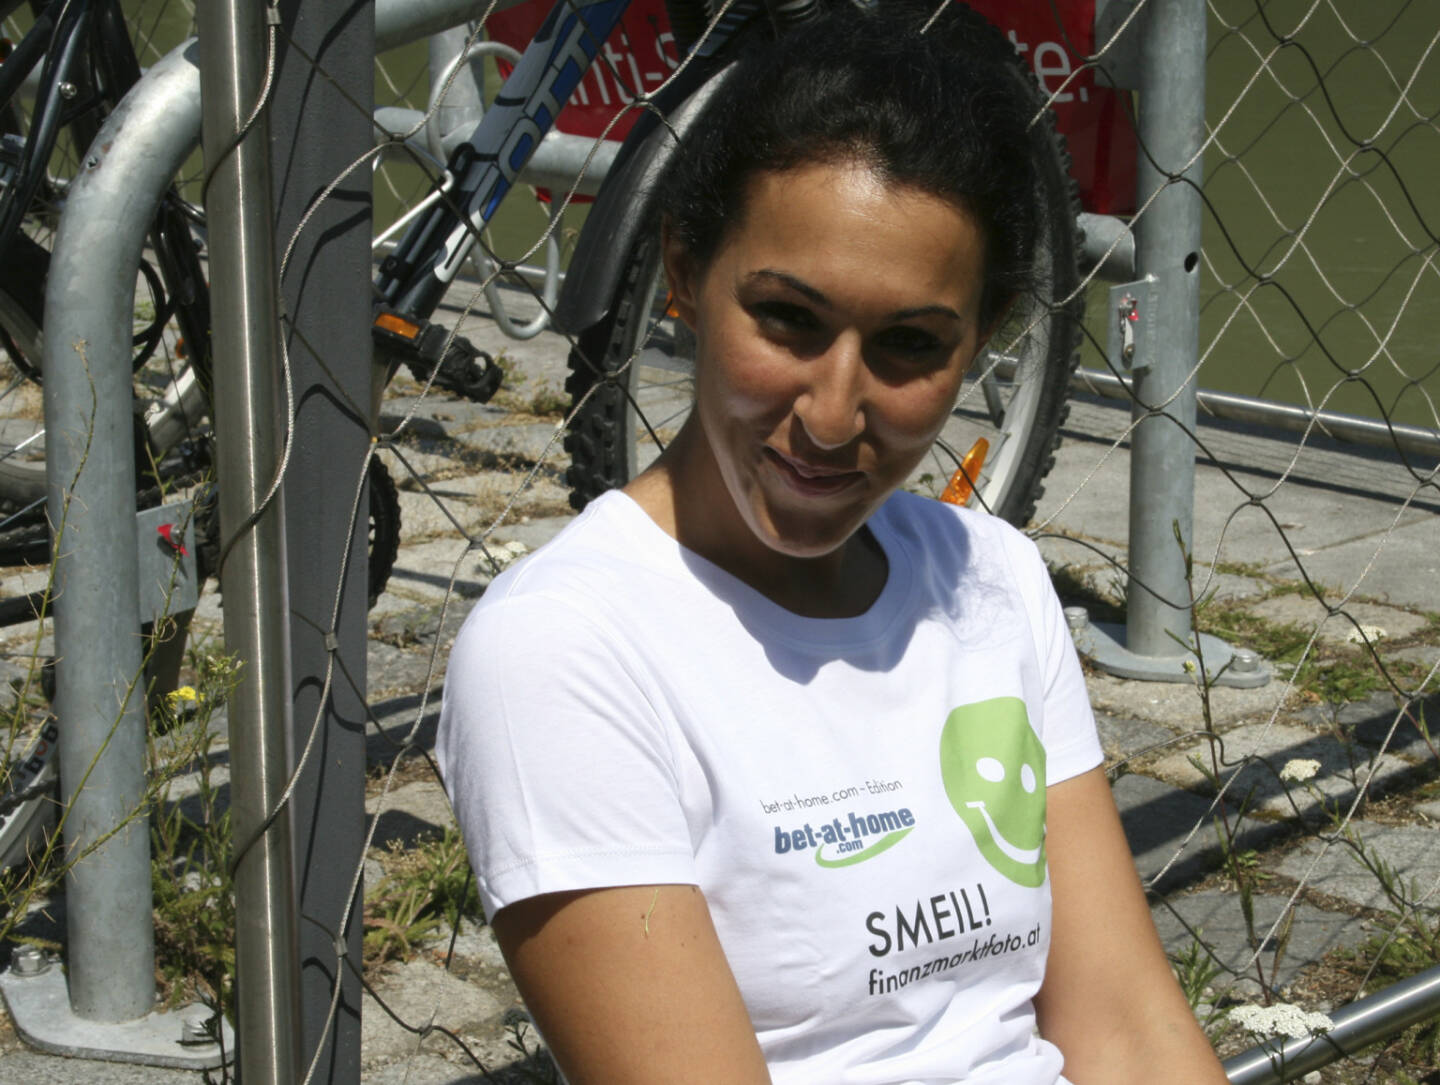 Fahrrad Smeil! Suzan Aytekin, mehr unter http://finanzmarktfoto.at/page/index/582 (Shirt in der bet-at-home.com-Edition)